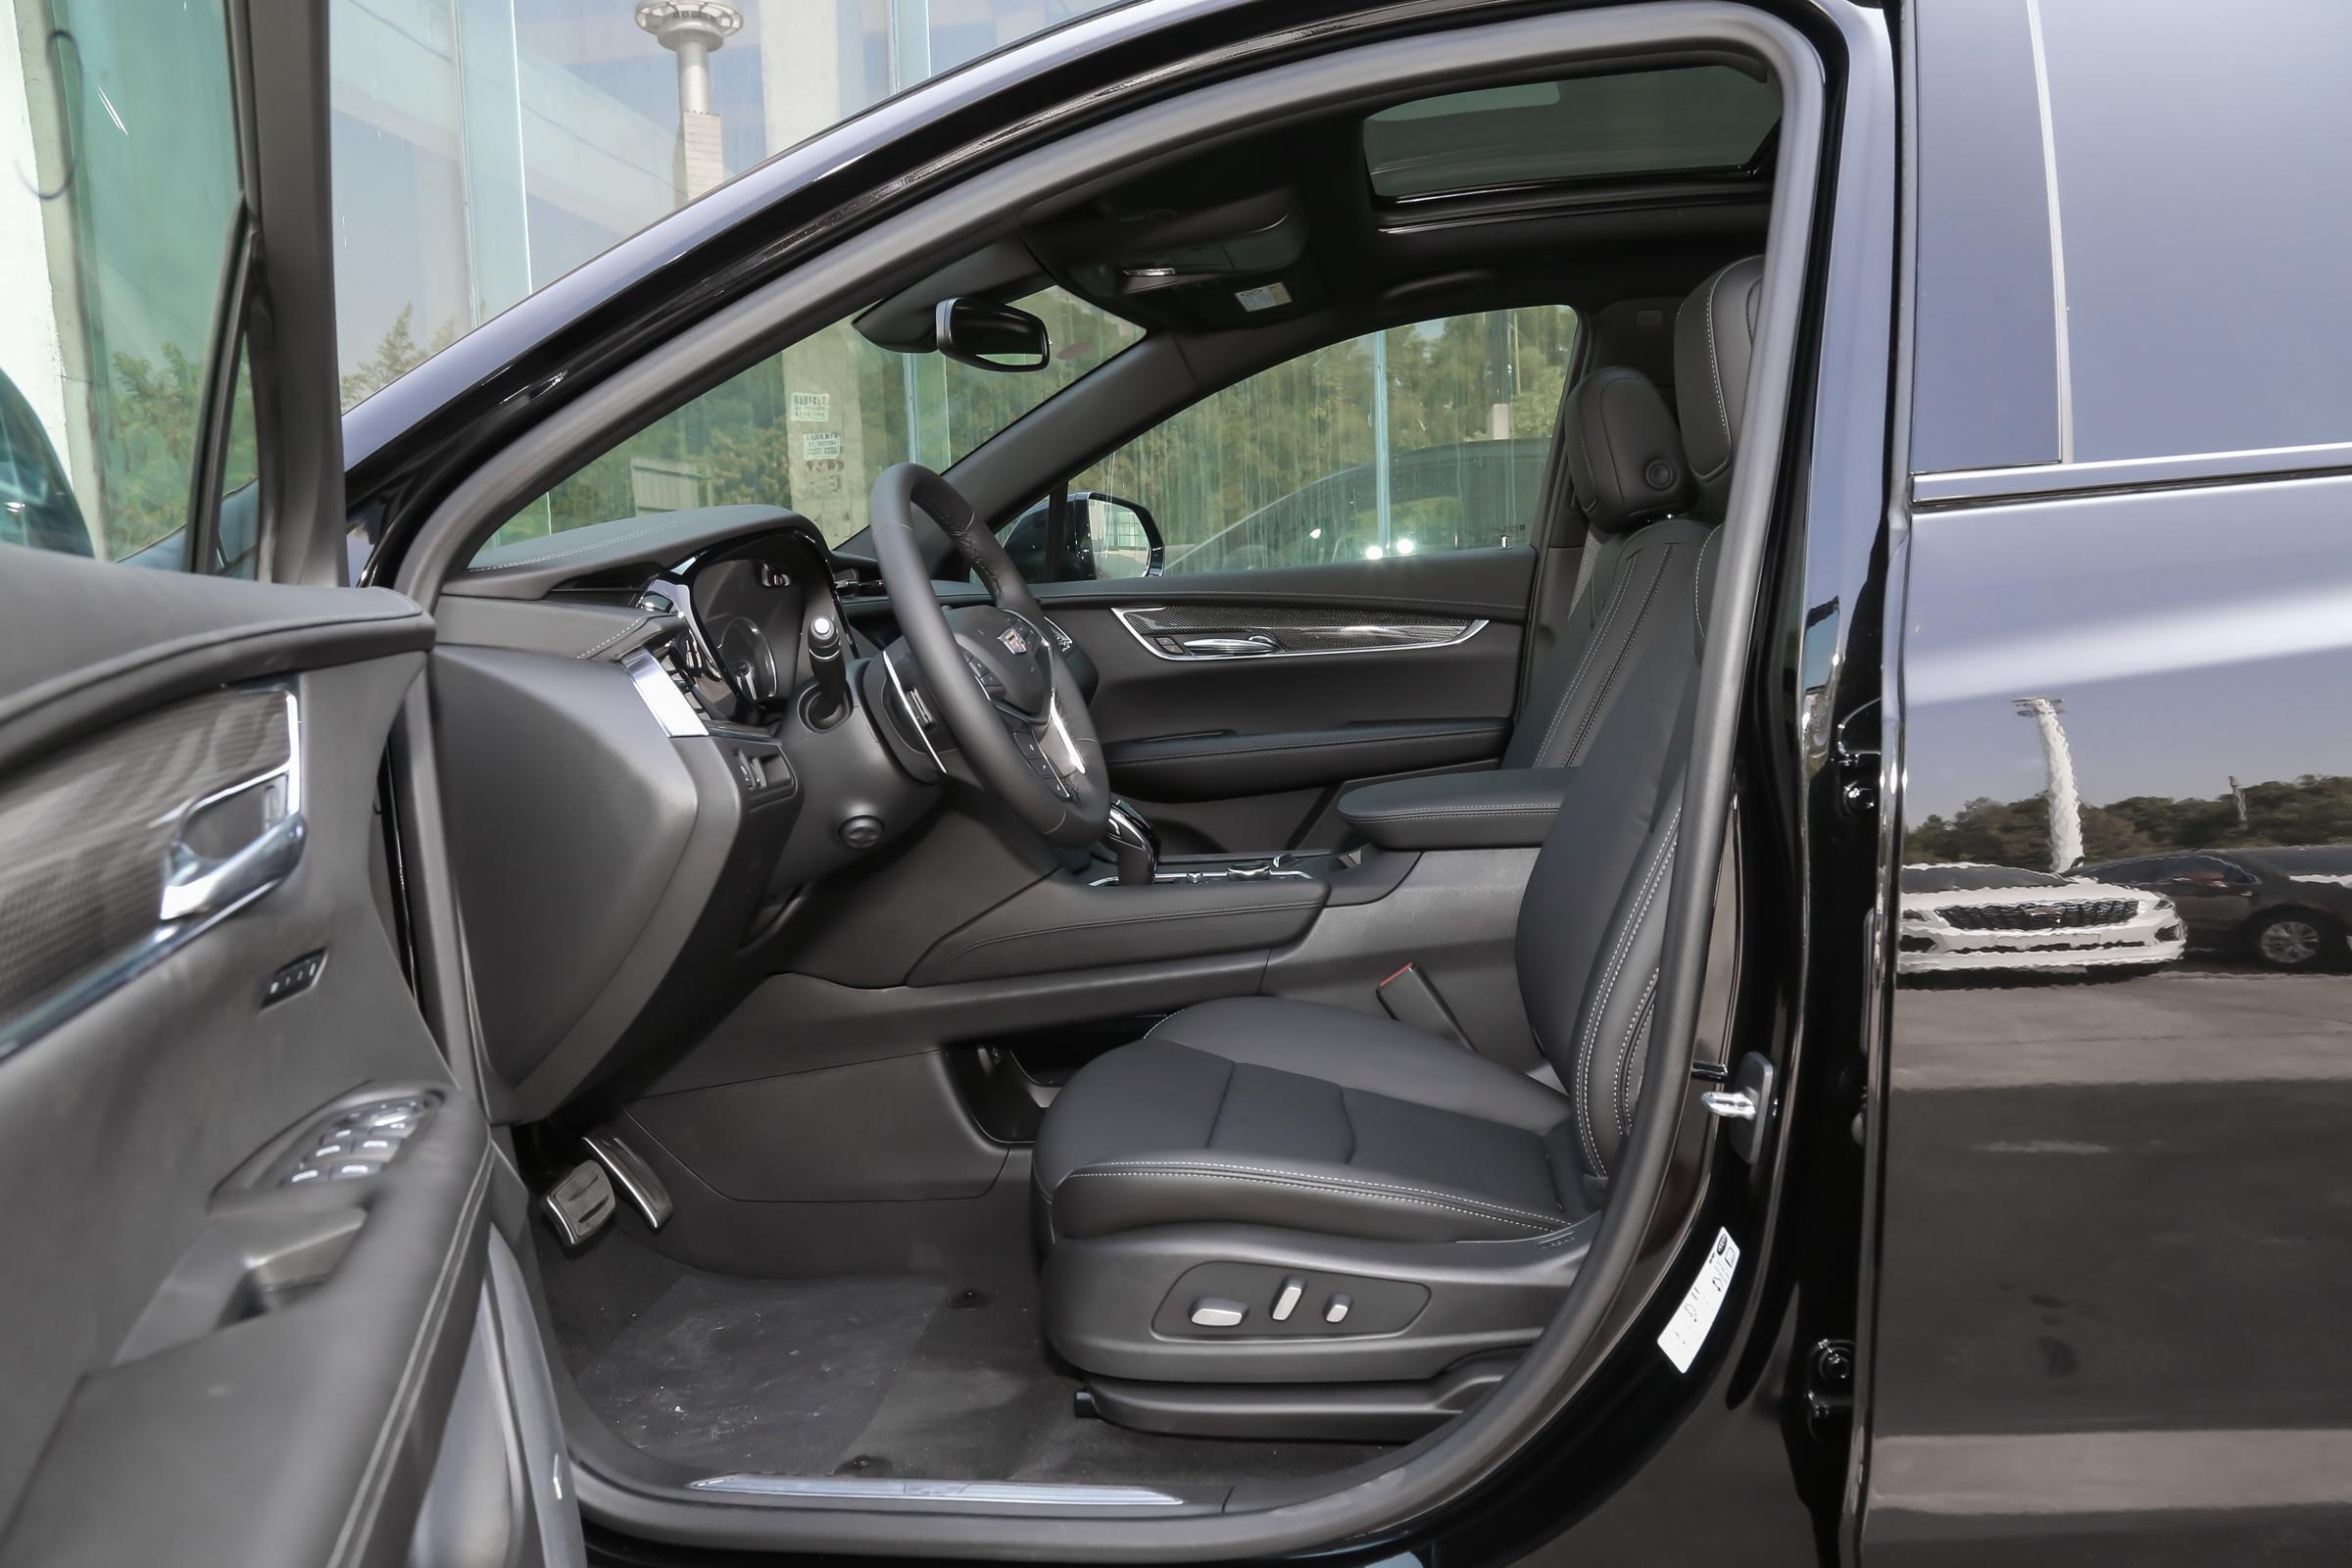 凯迪拉克xt5车系调整,新增豪华型四驱蜂鸟版,售价3827万元